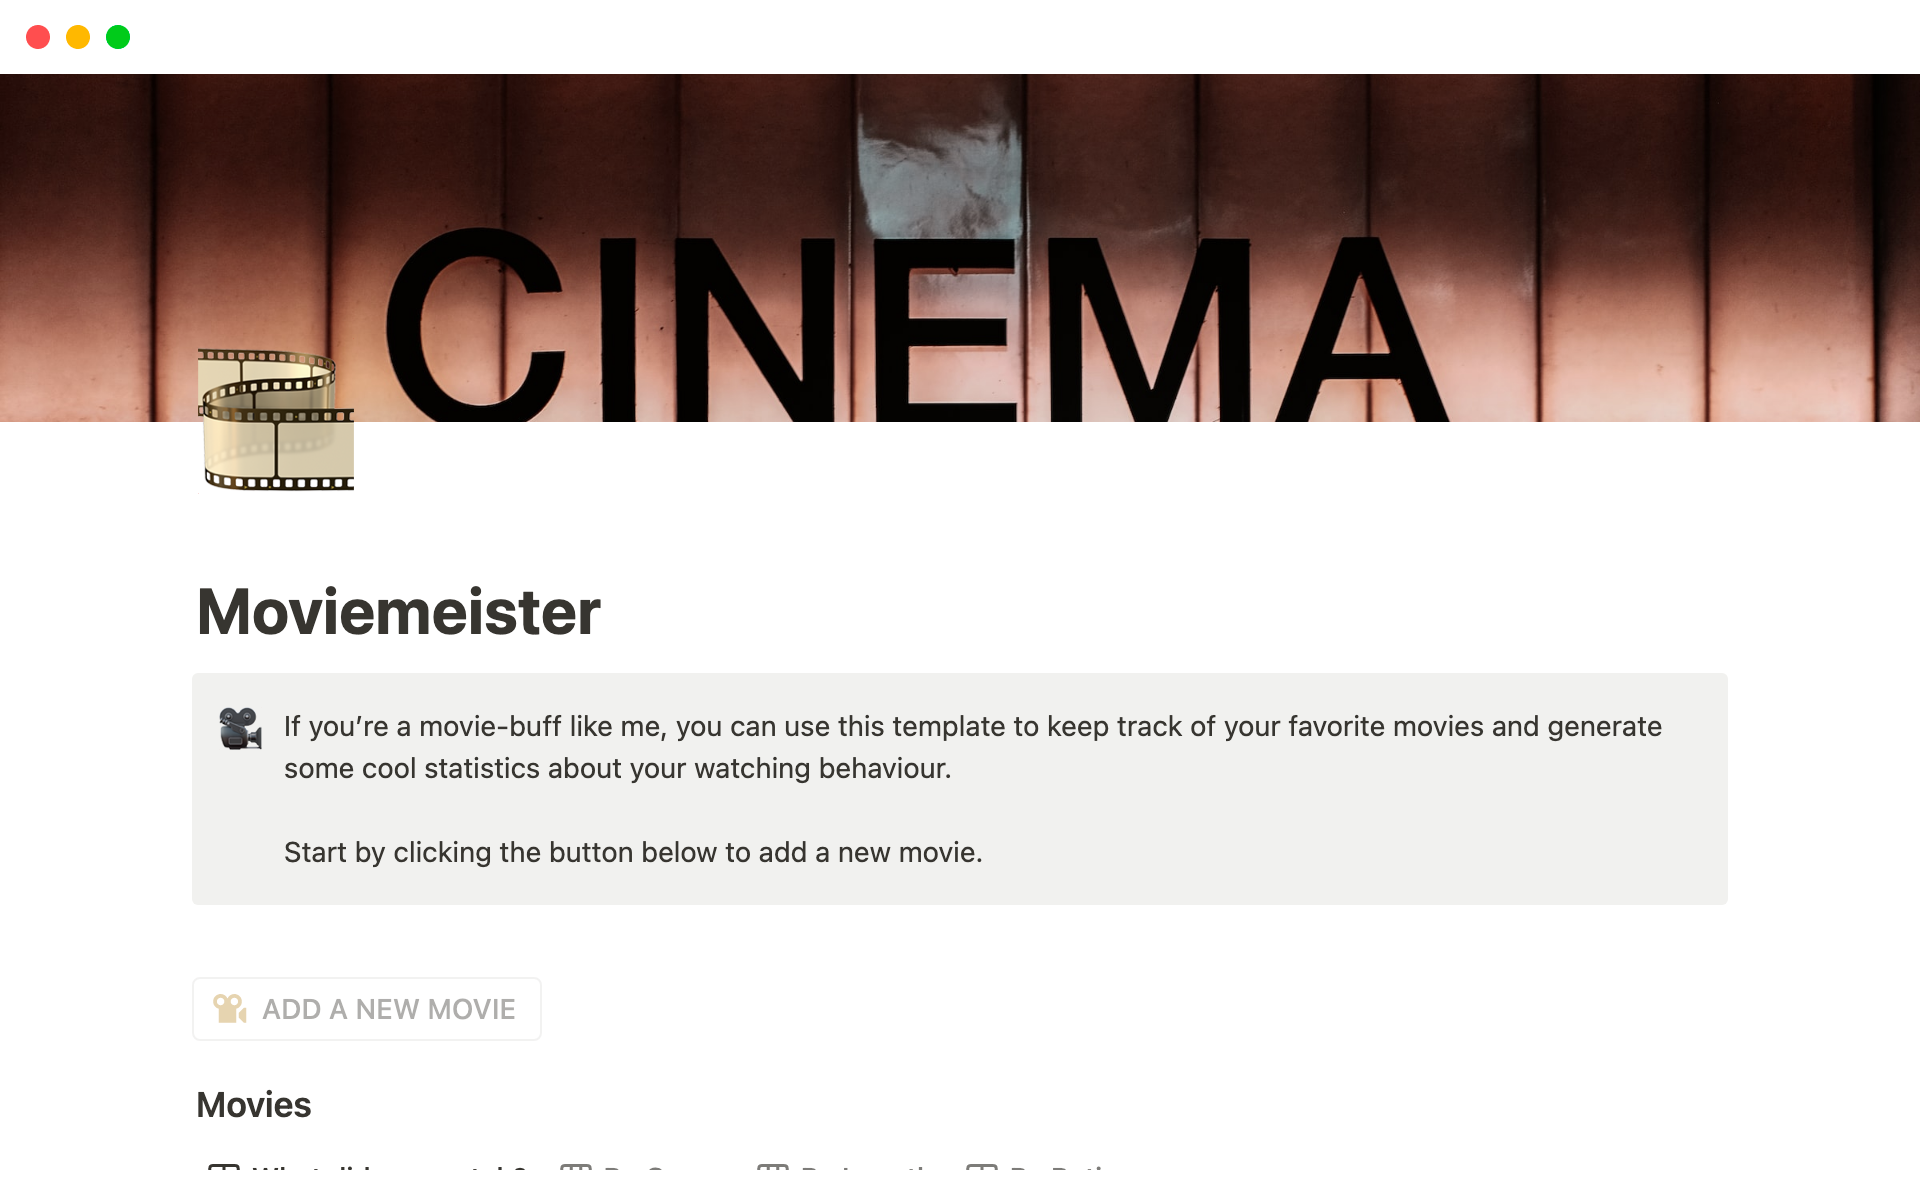 Vista previa de una plantilla para MovieMeister